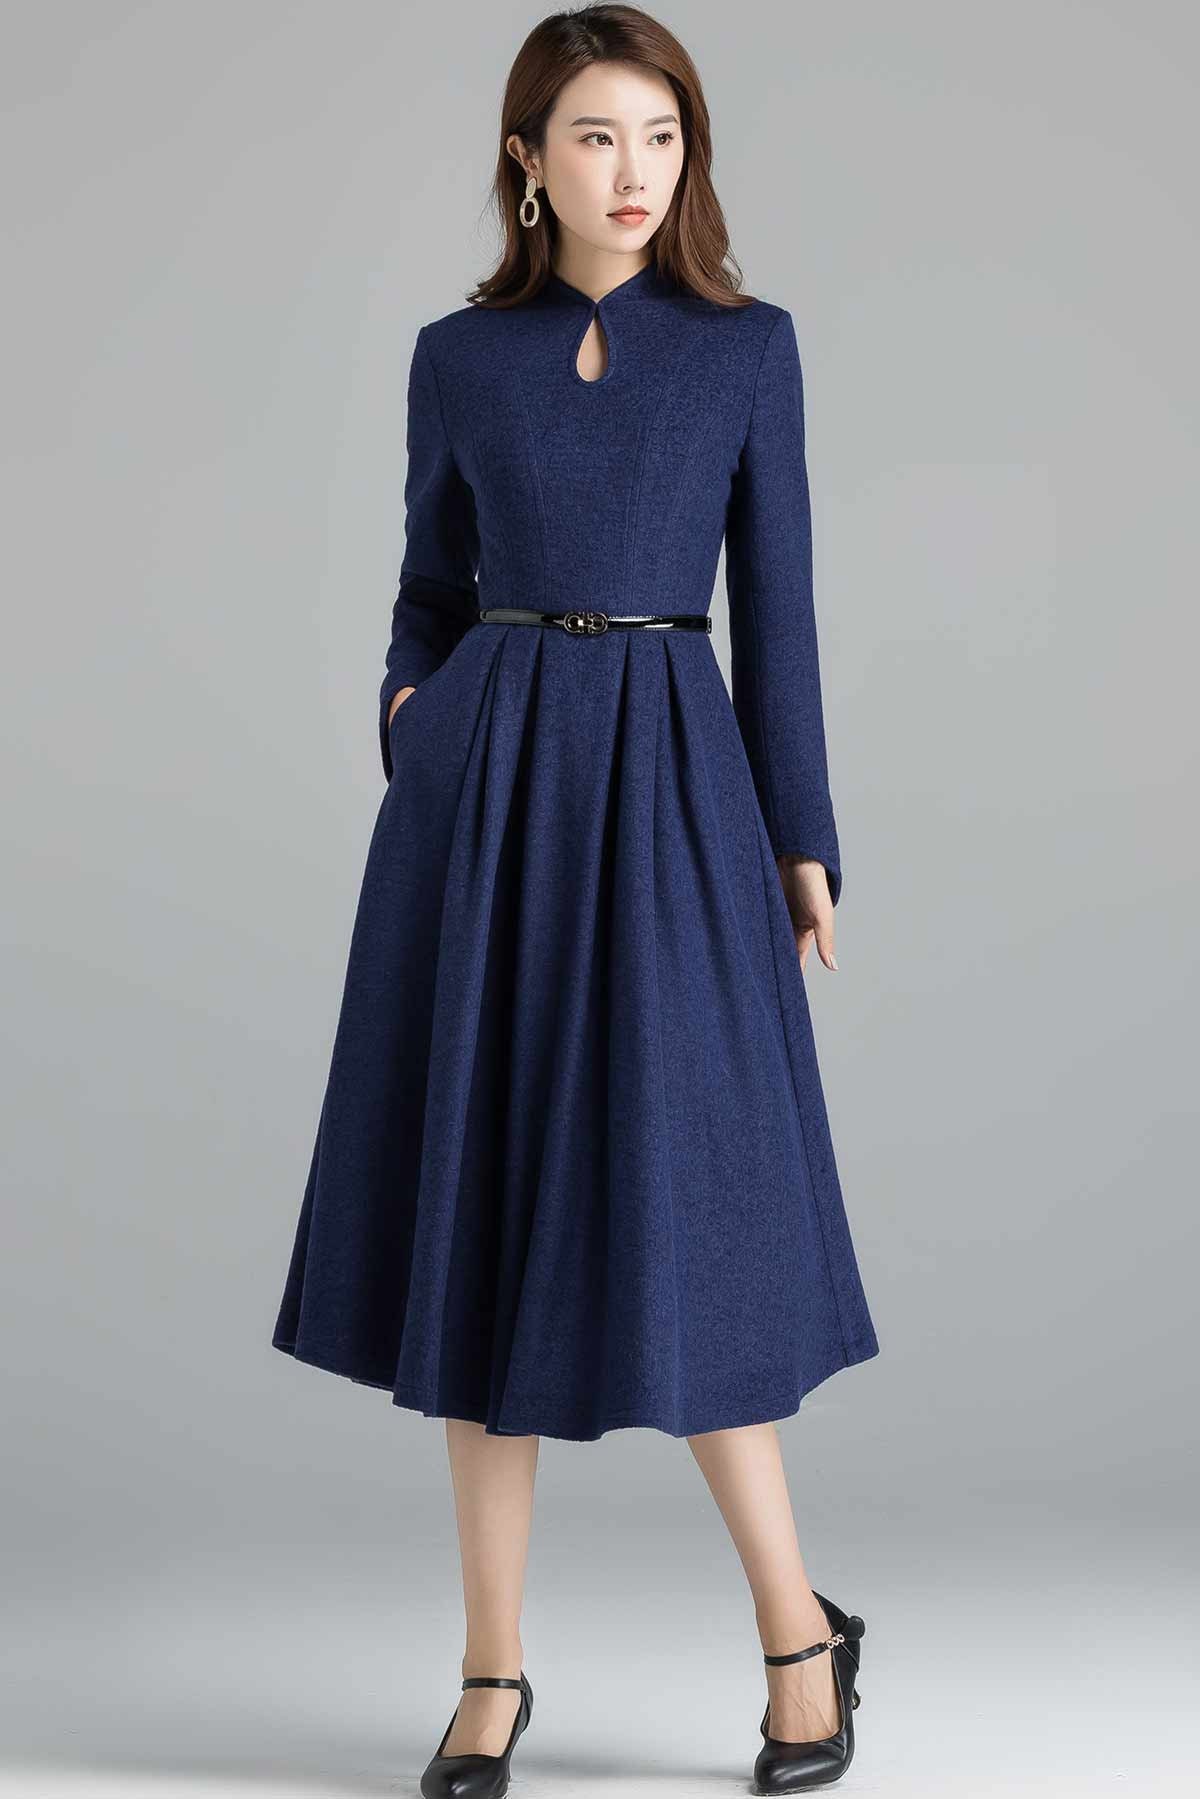 Vintage inspired wool dress Wool dress women A Line dress | Etsy